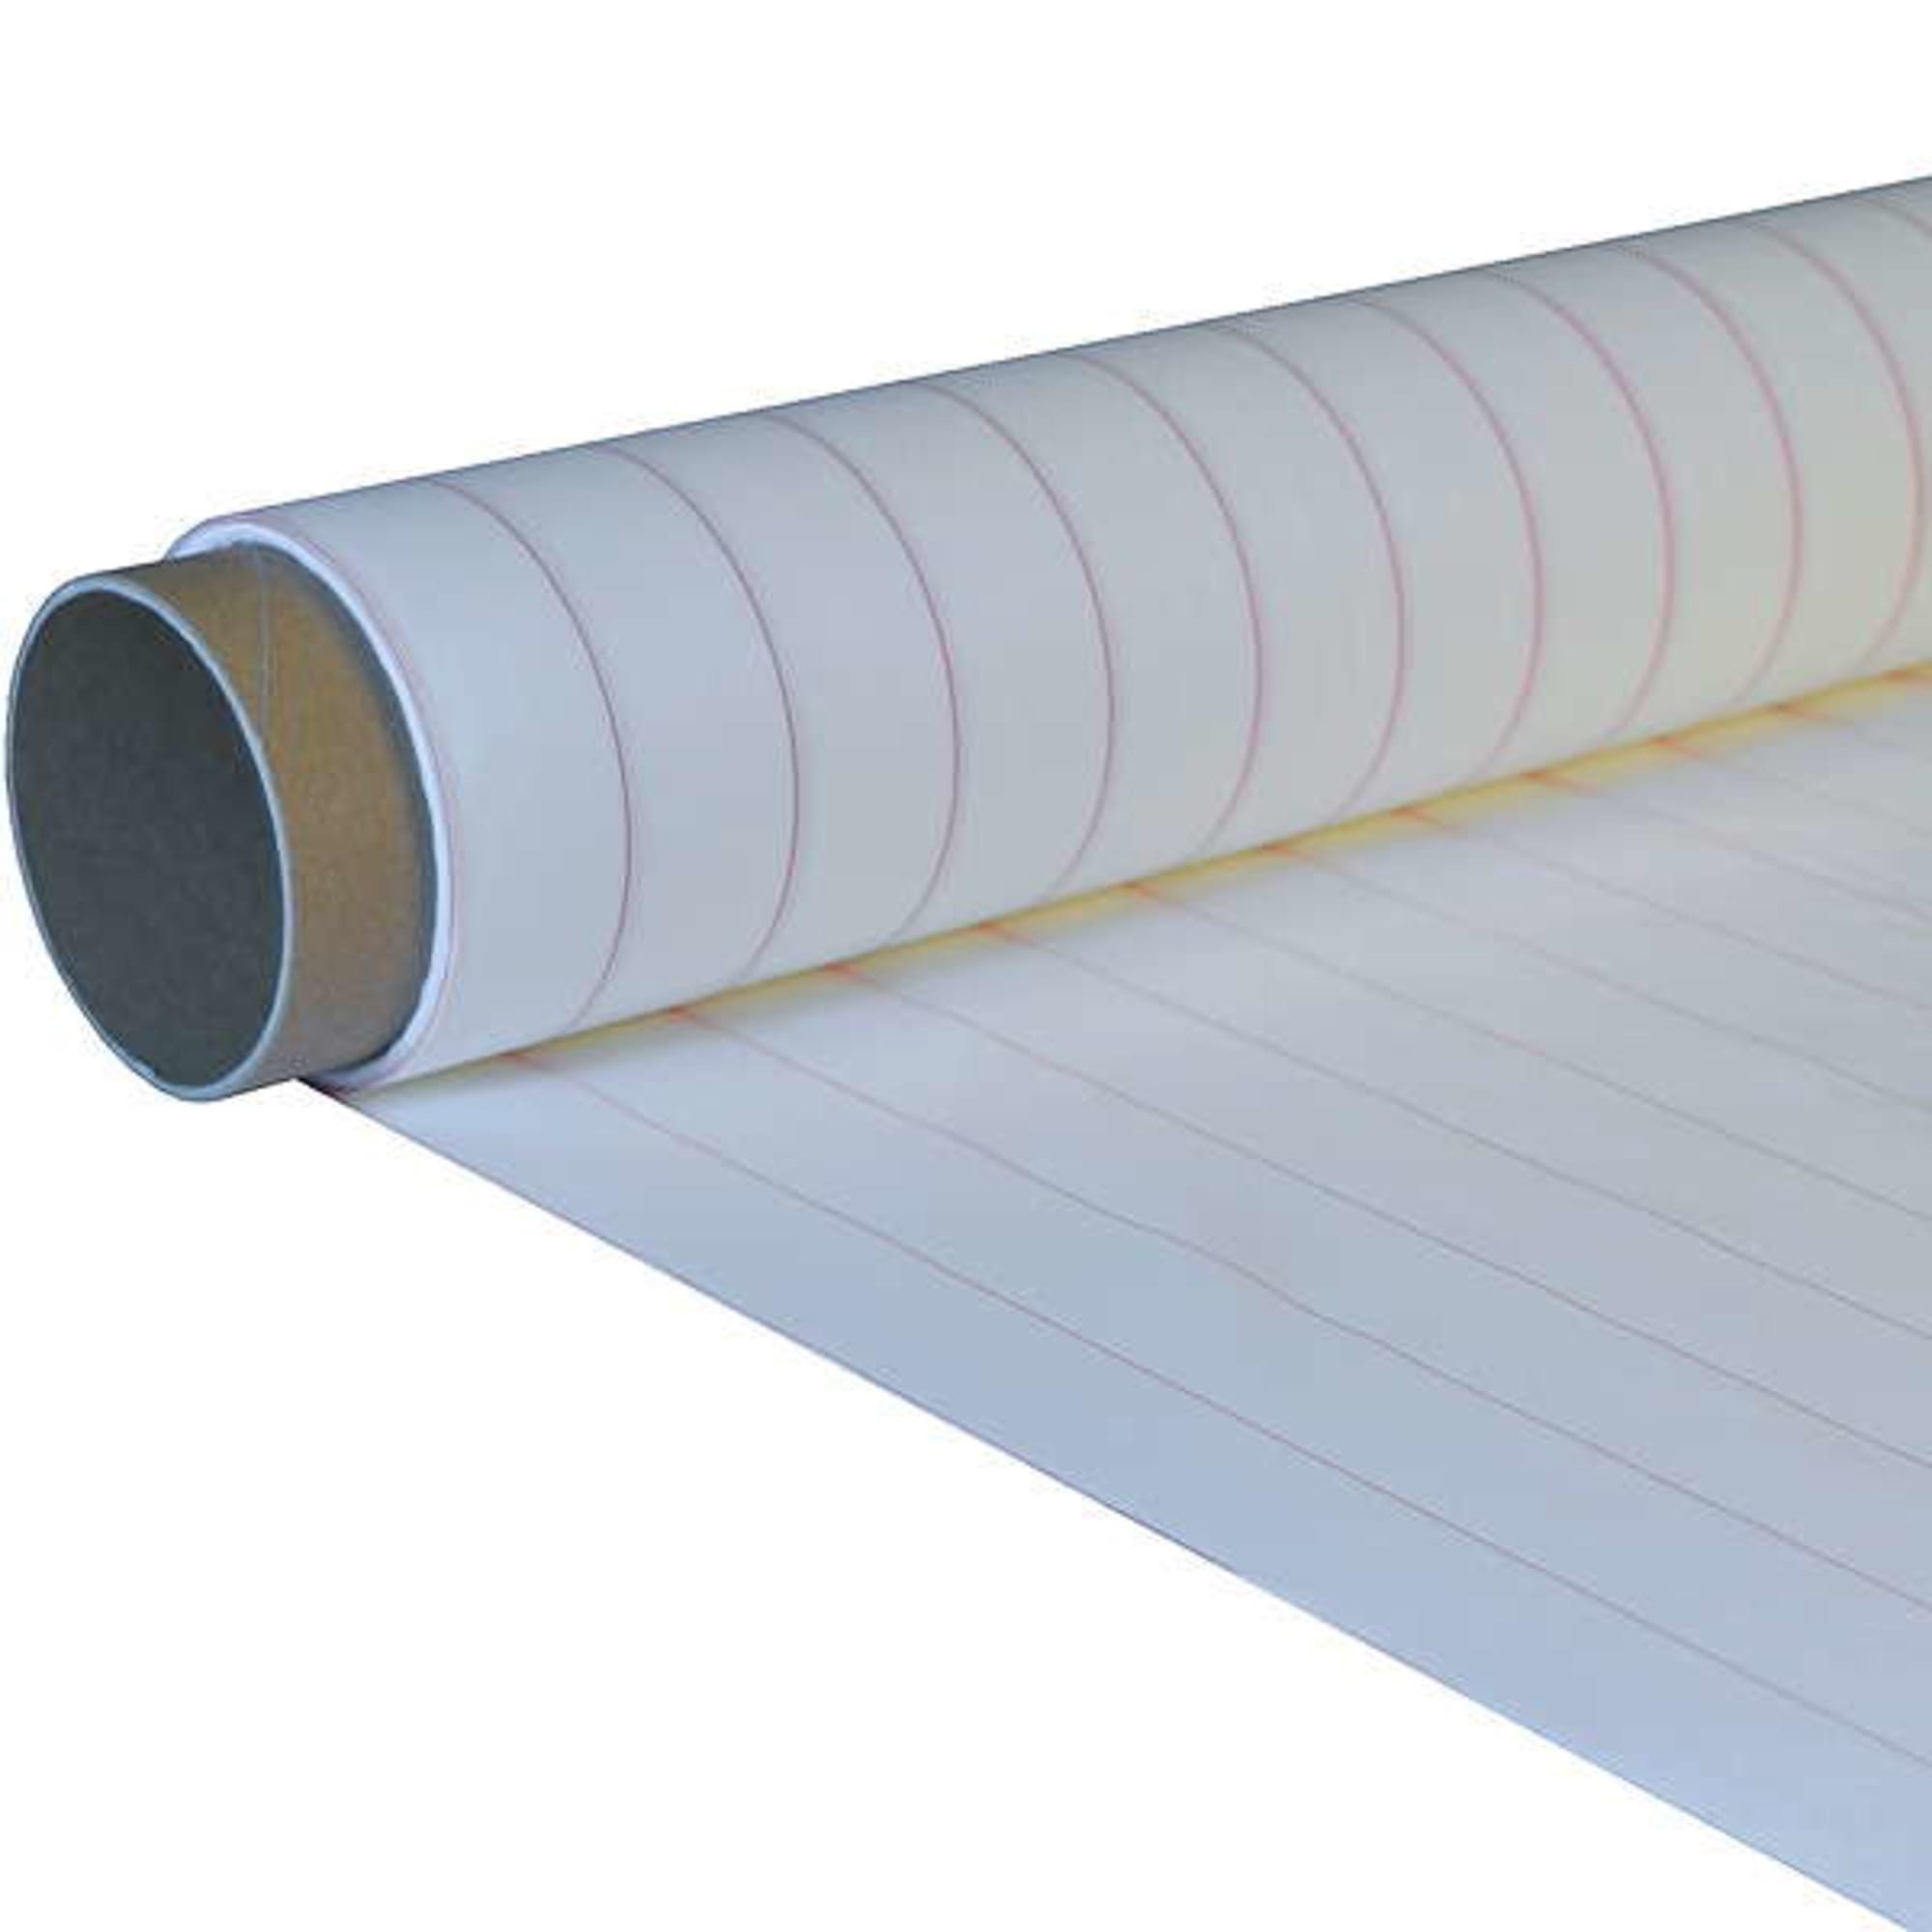 Peel ply 64 g/m² (plain weave) 100 cm , image 2